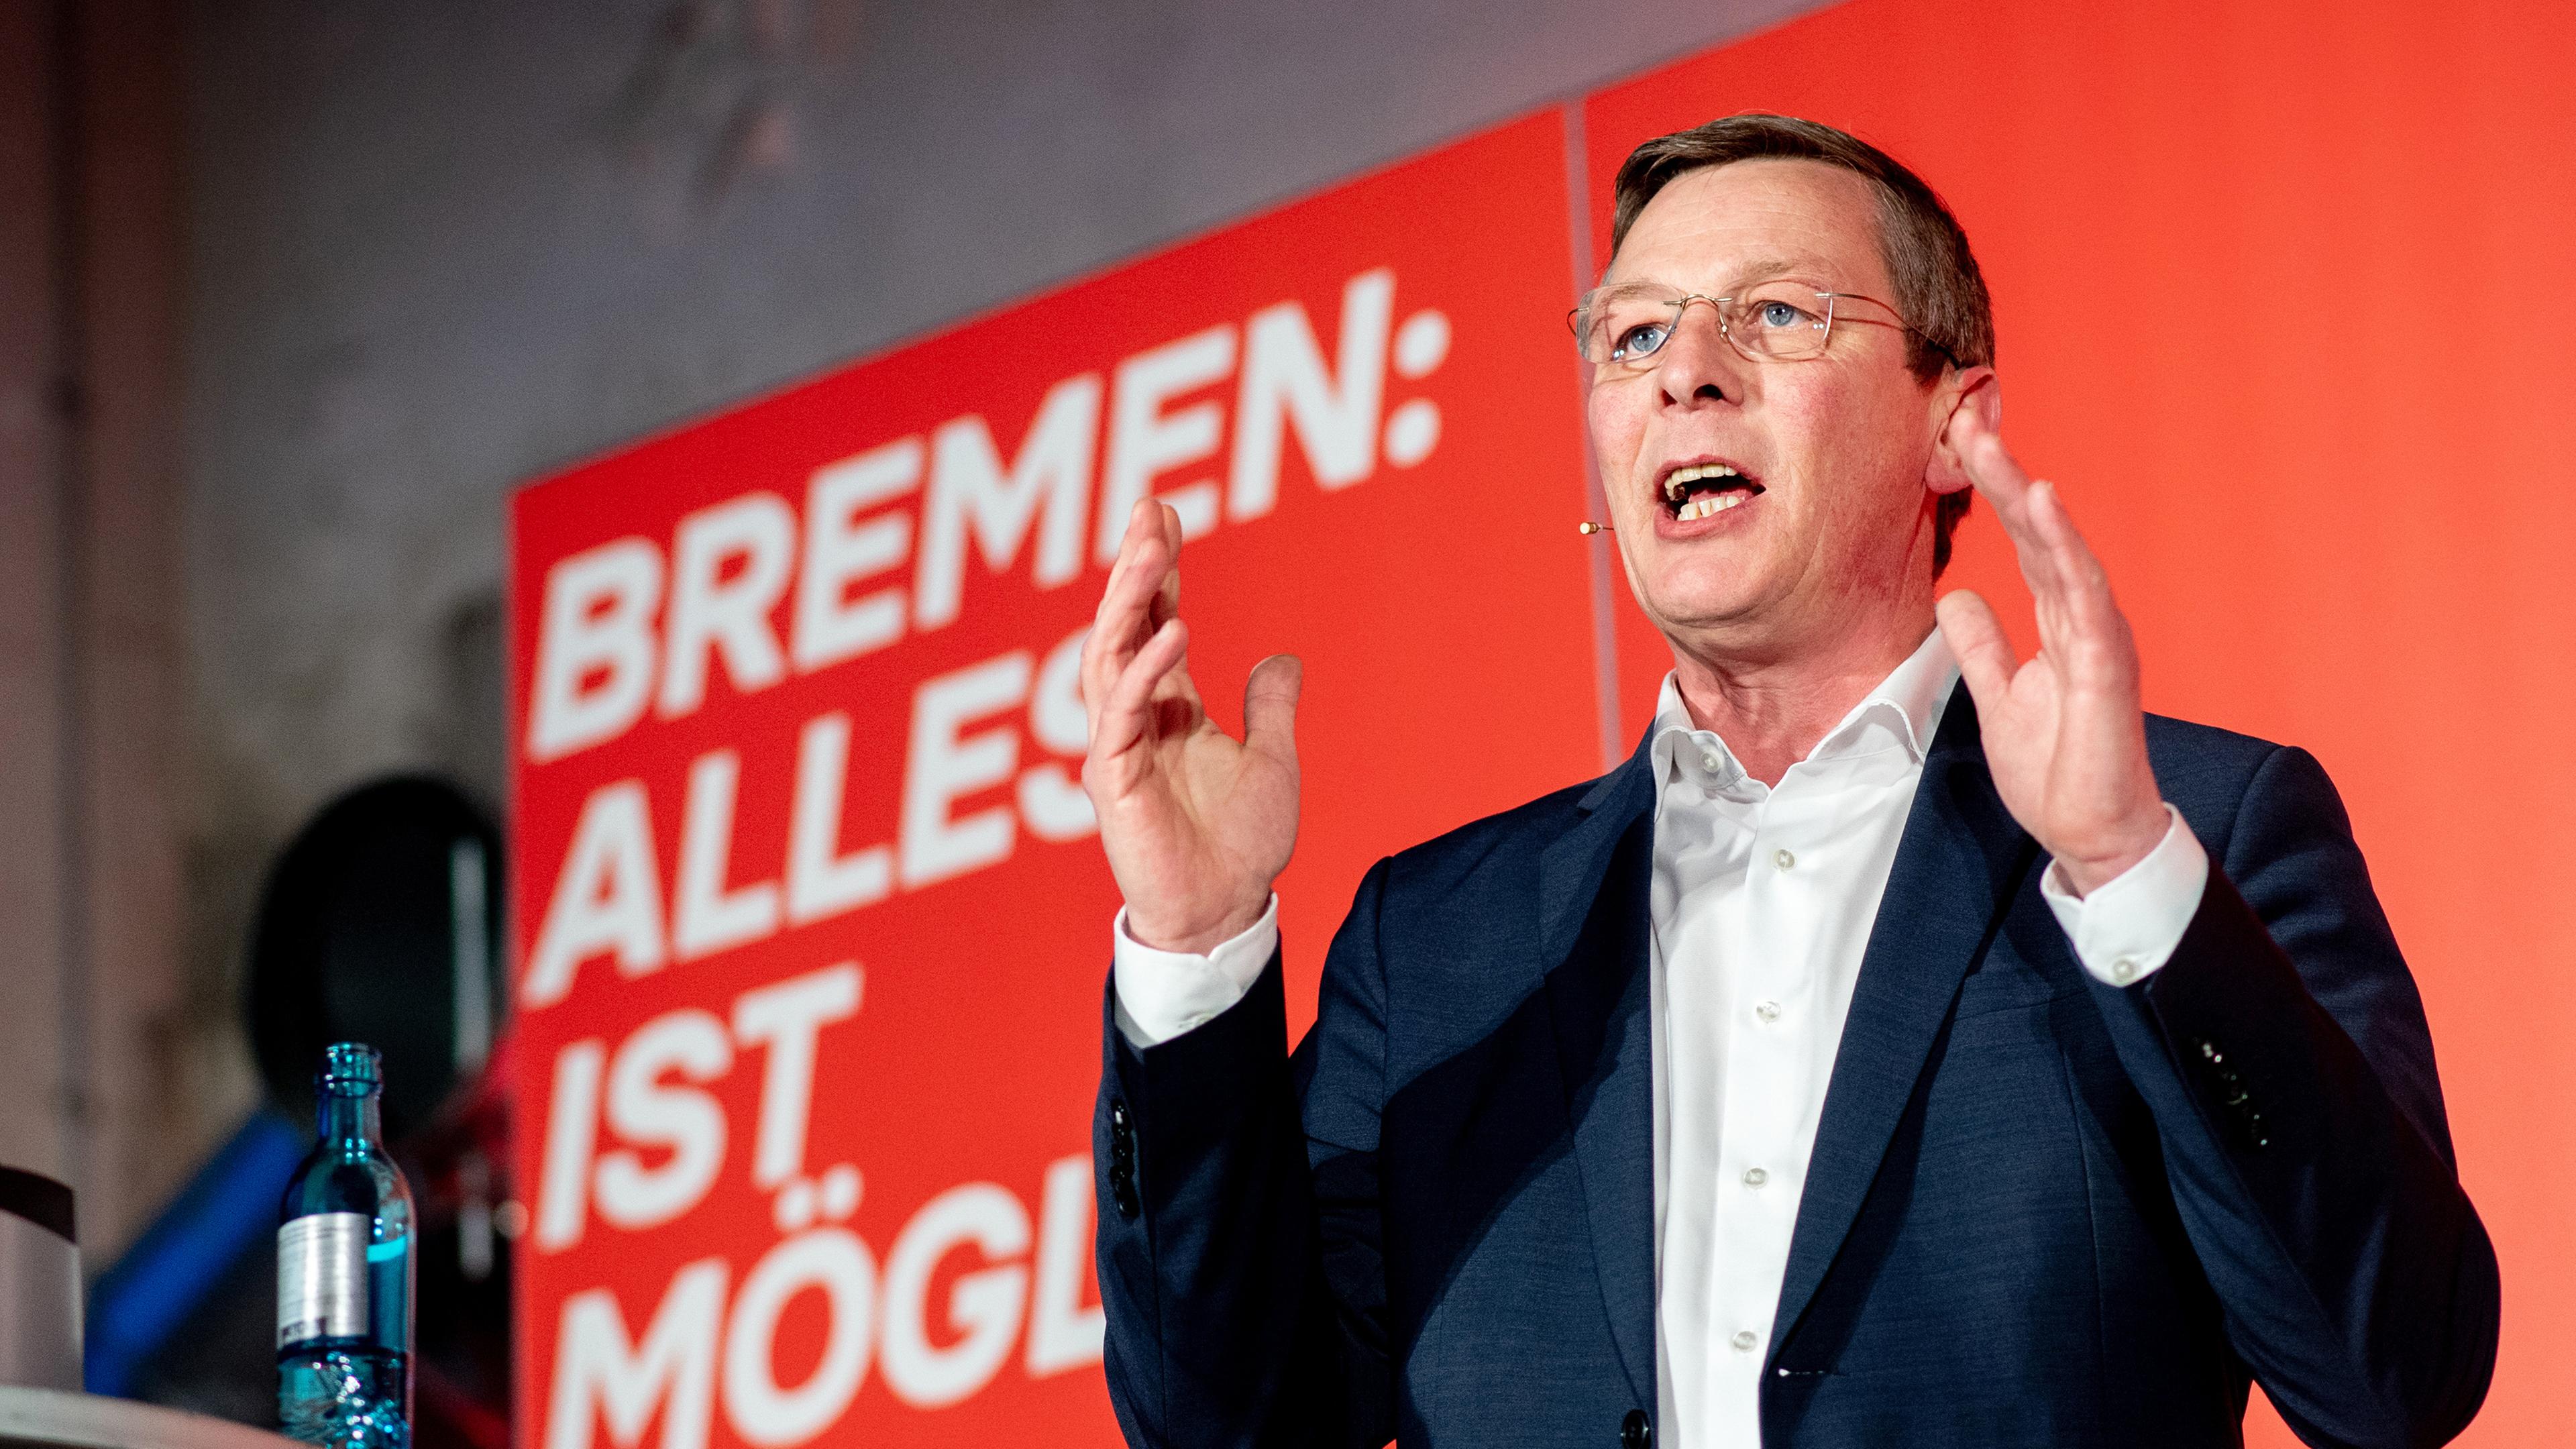 Bremen: Frank Imhoff, Spitzenkandidat der CDU Bremen für die Bürgerschaftswahl.